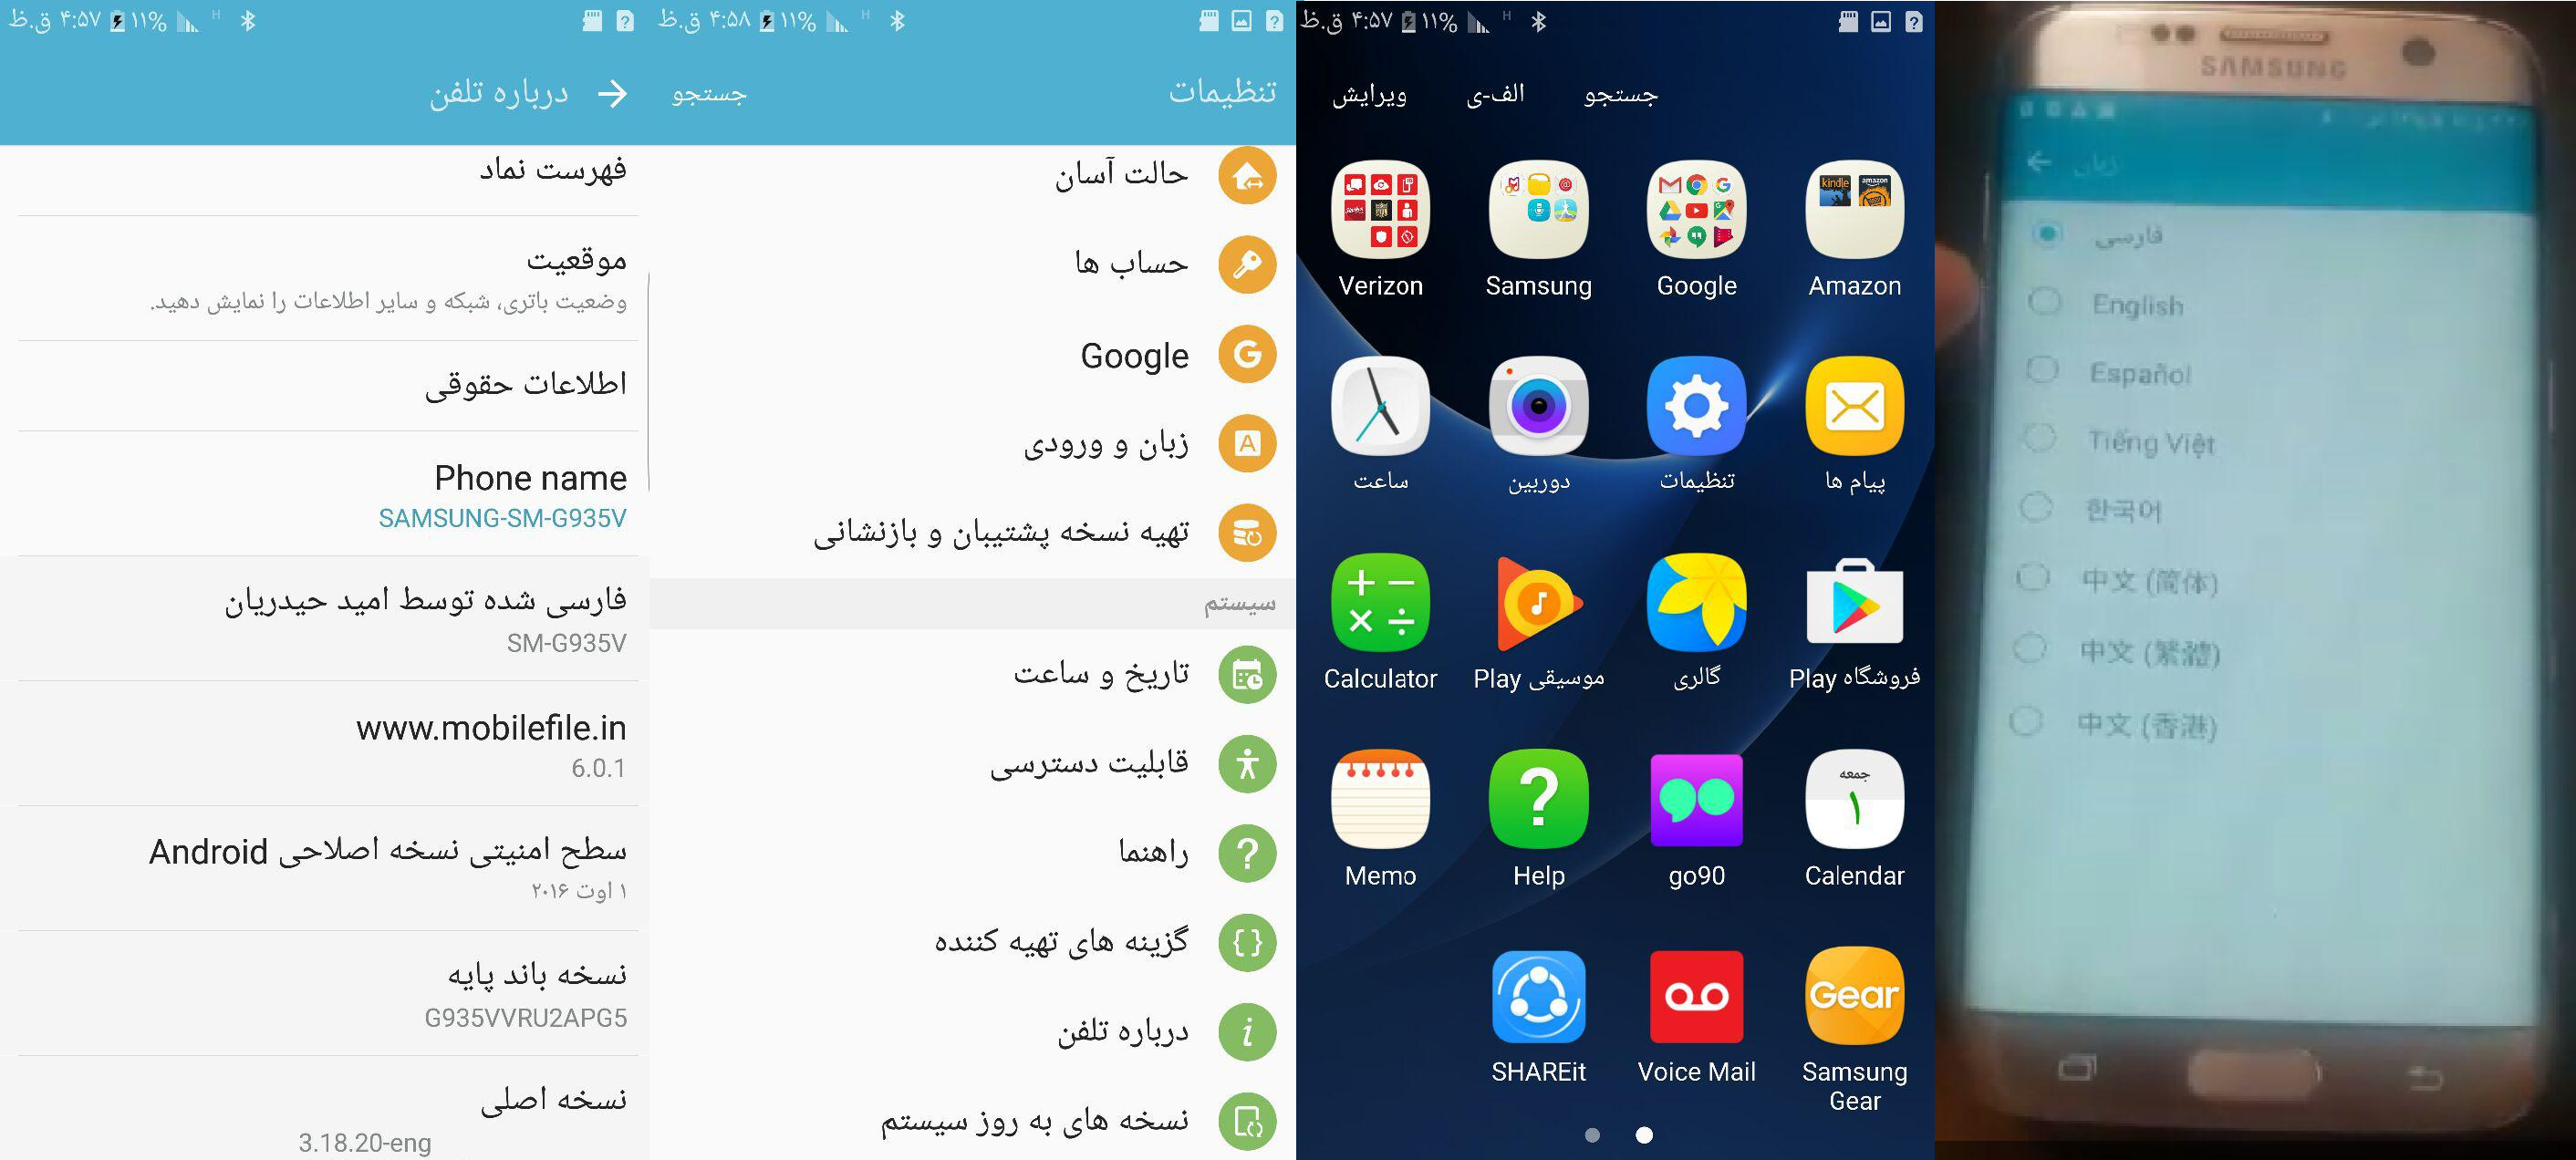 فایل فارسی G935V اندروید 6.0.1 برای اولین بار توسط موبایل فایل